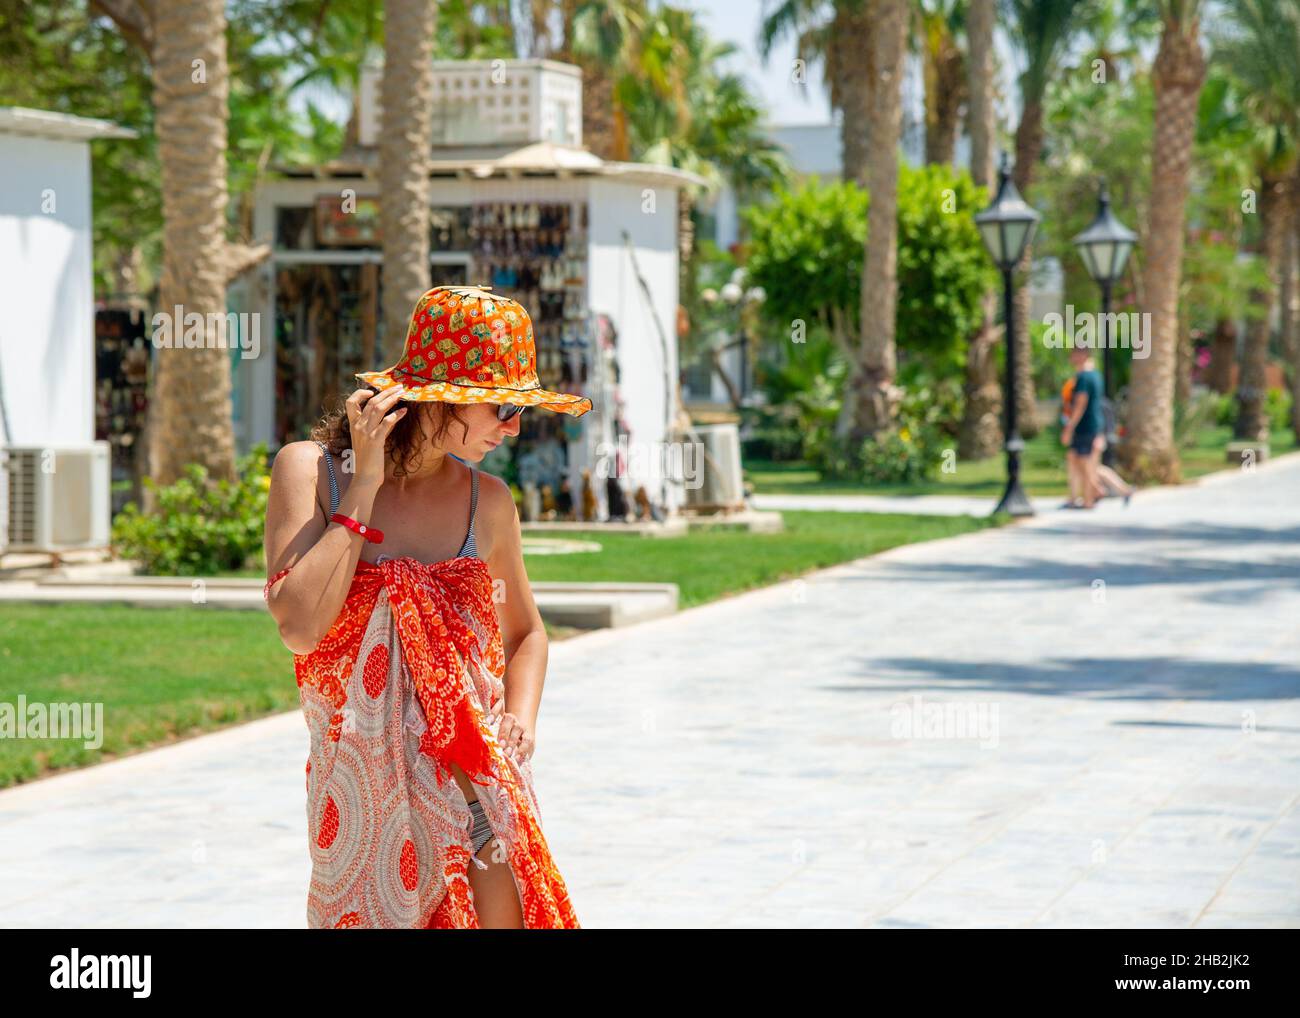 Belle femme de 40 ans posant en voyage en Egypte Hurgada sur la plage. Concept pour les voyages Banque D'Images